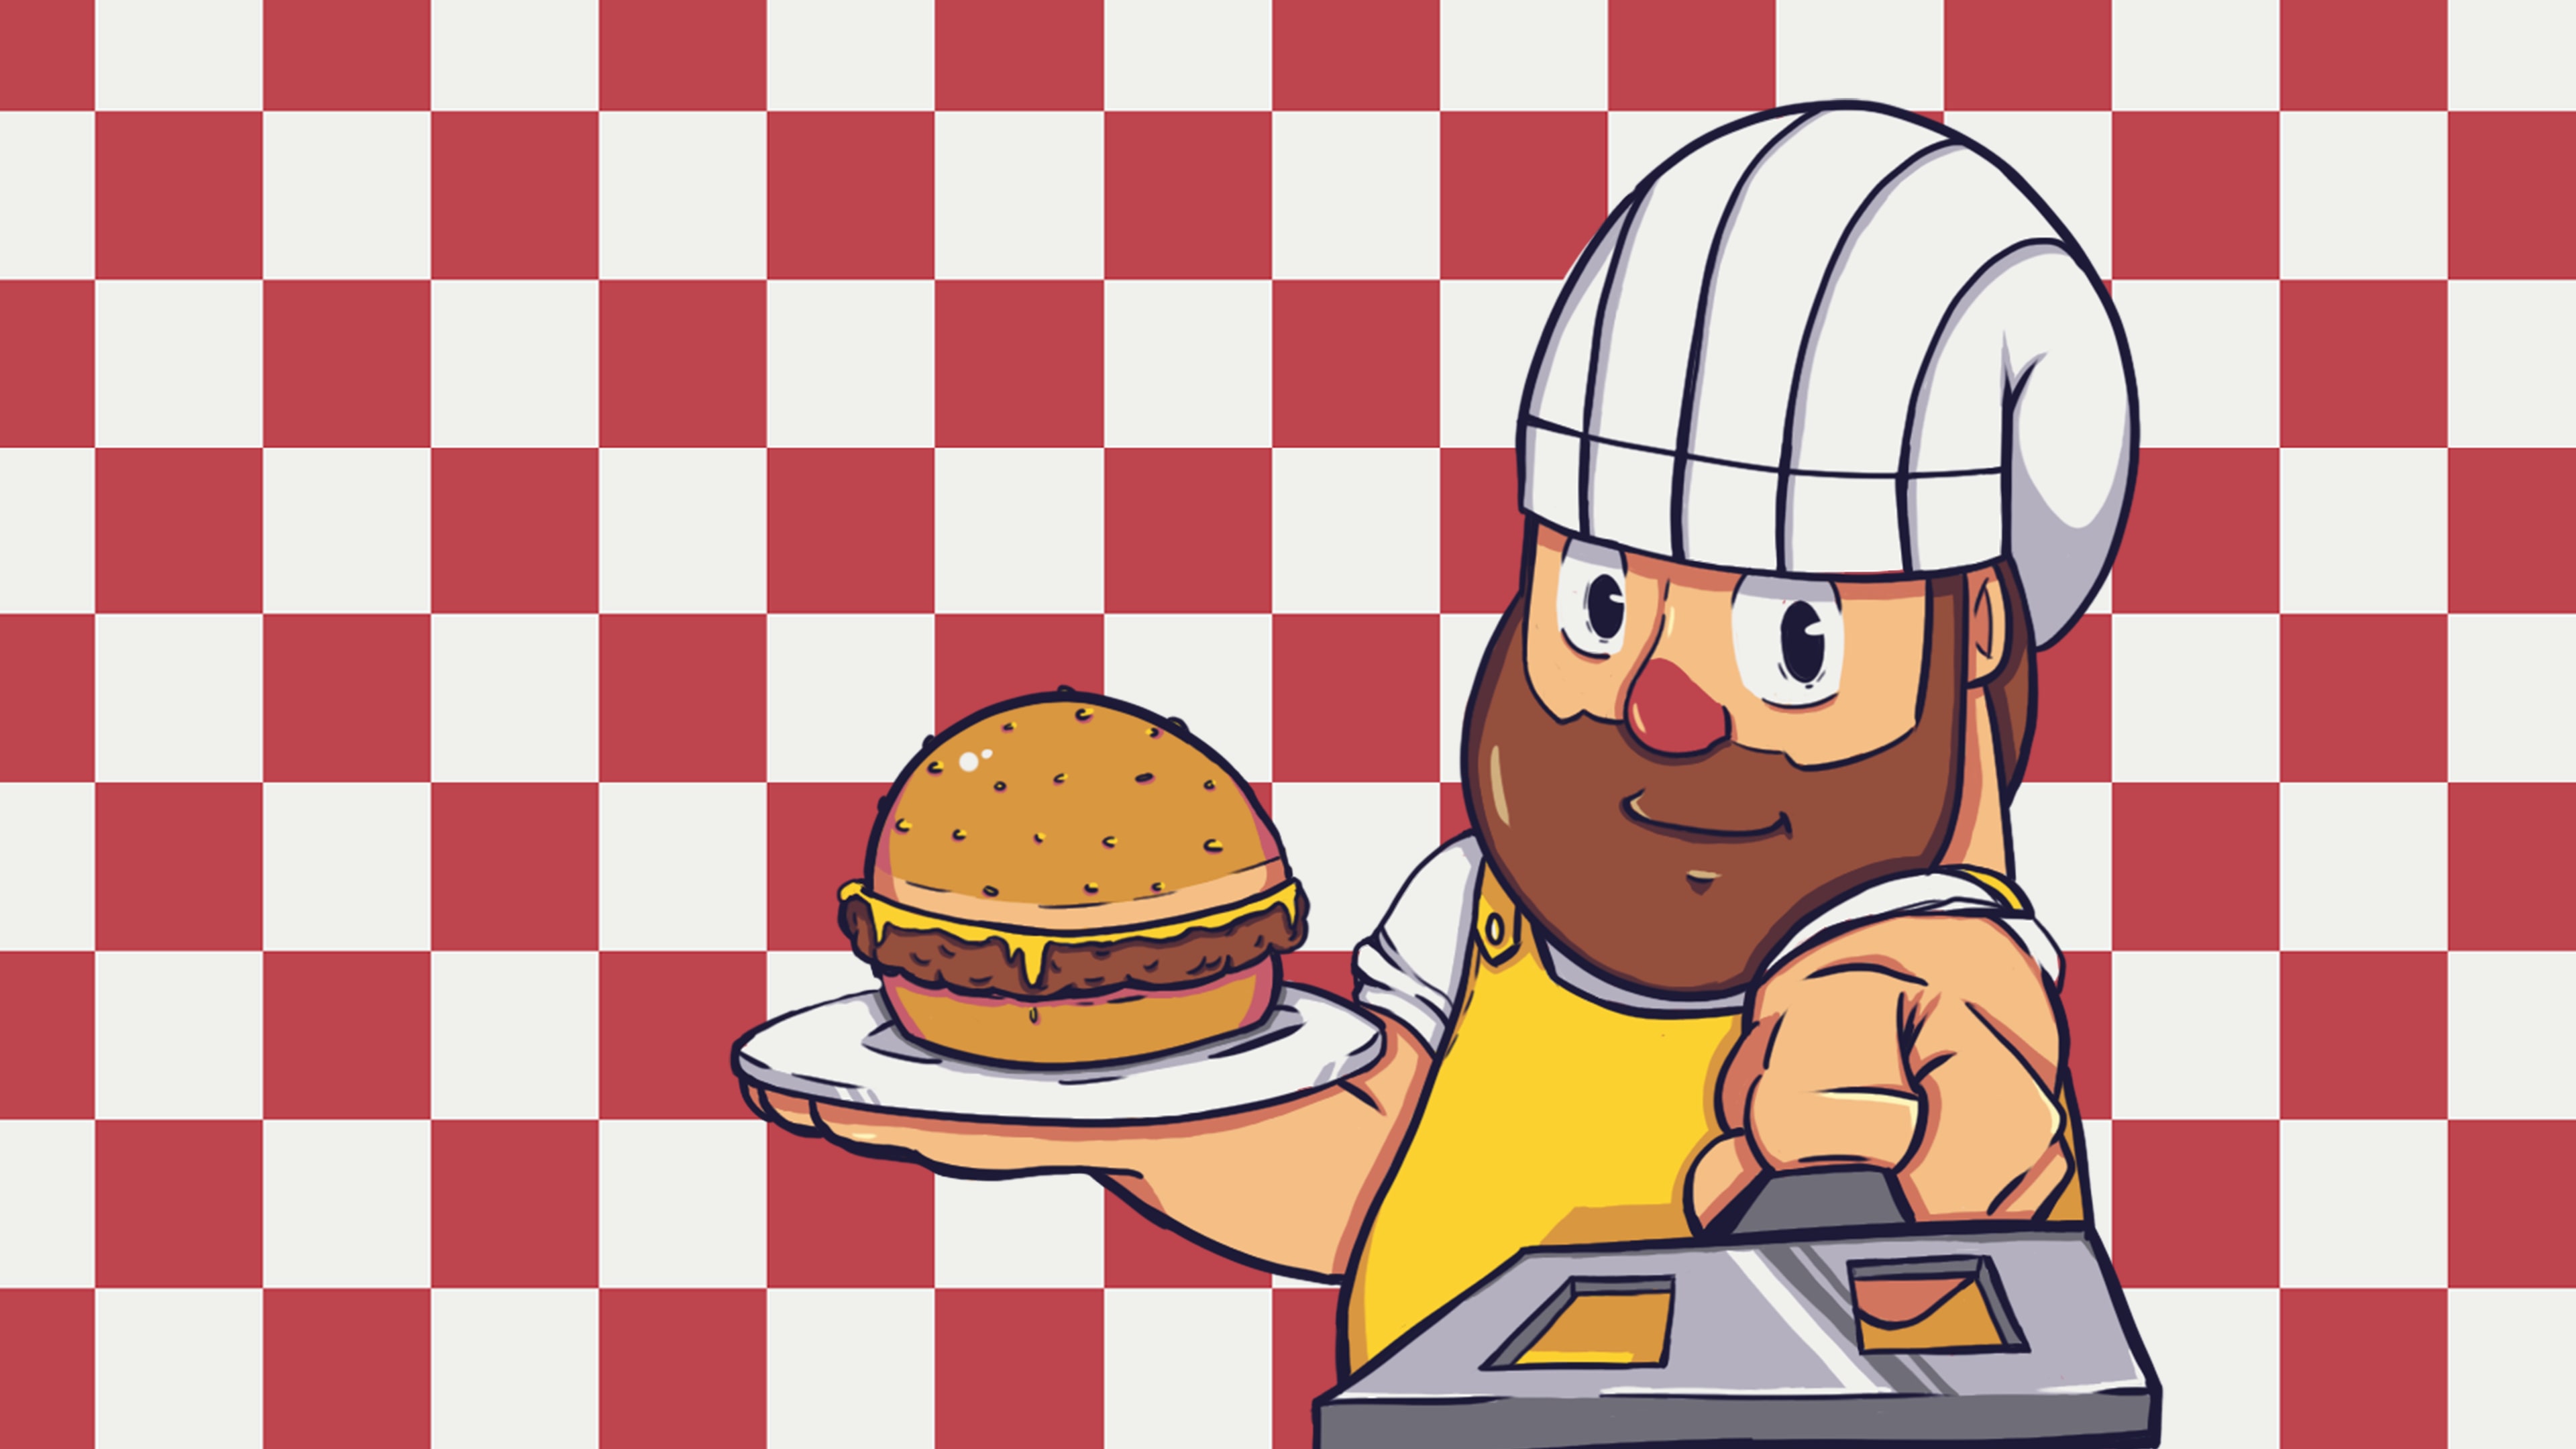 Make the Burger (영어)